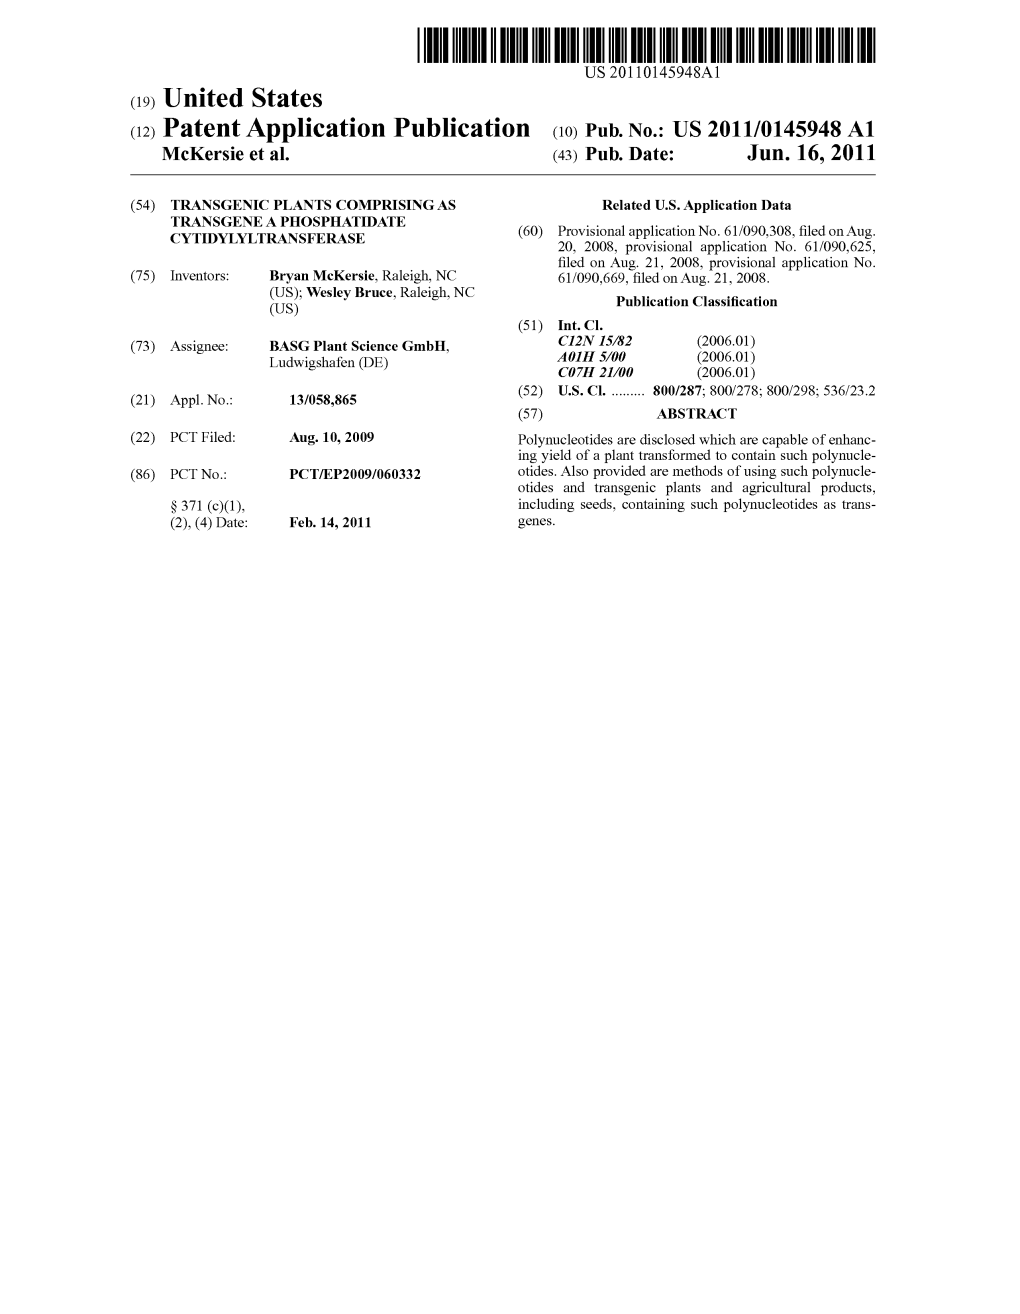 (12) Patent Application Publication (10) Pub. No.: US 2011/0145948 A1 Mckersie Et Al